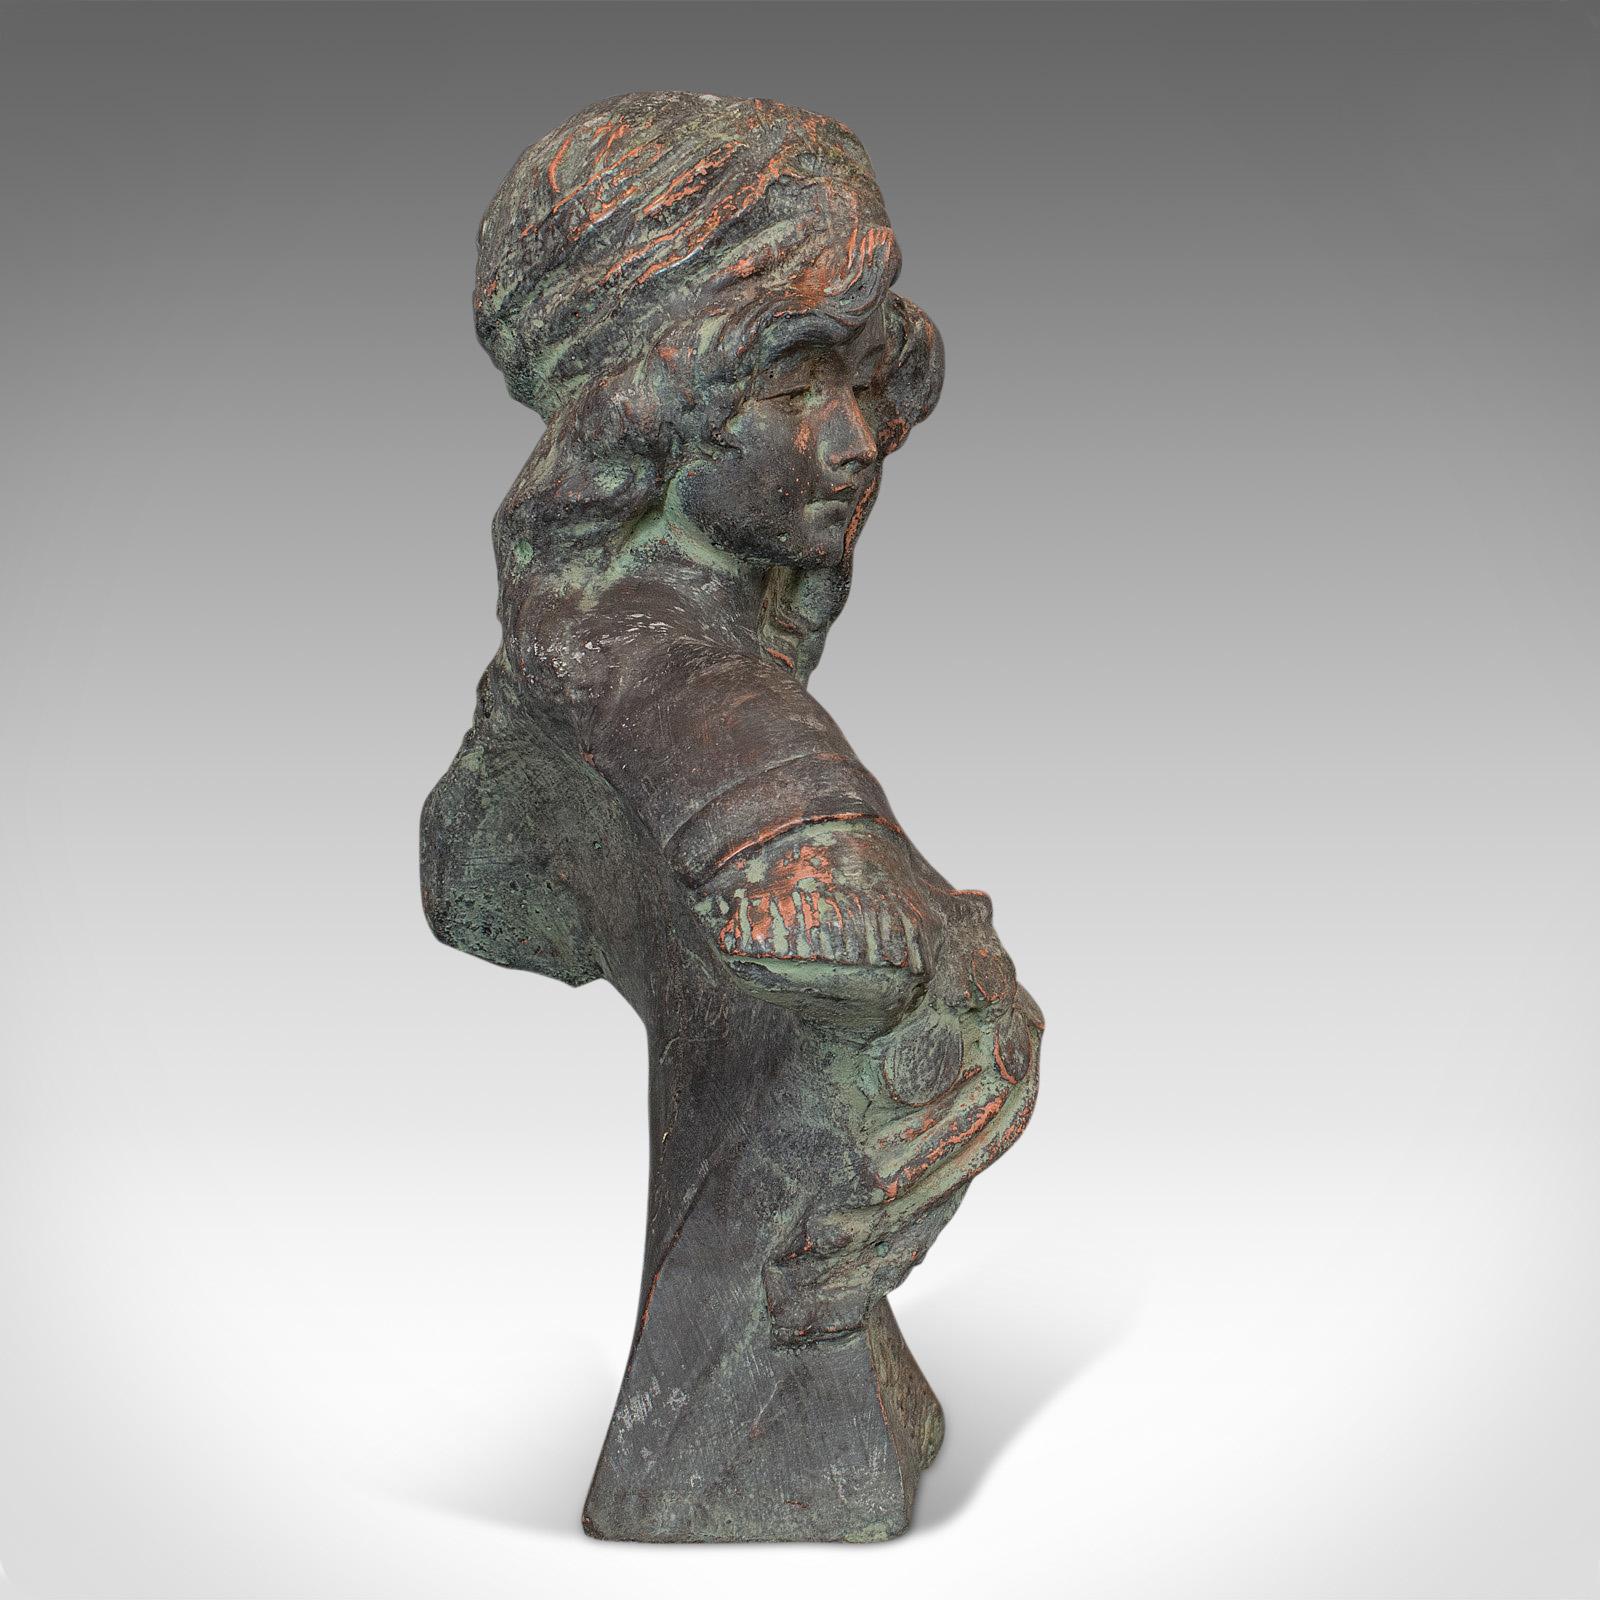 20th Century Vintage Female Bust, French, Bronzed Stone, Portrait, Statue, Art Nouveau Taste